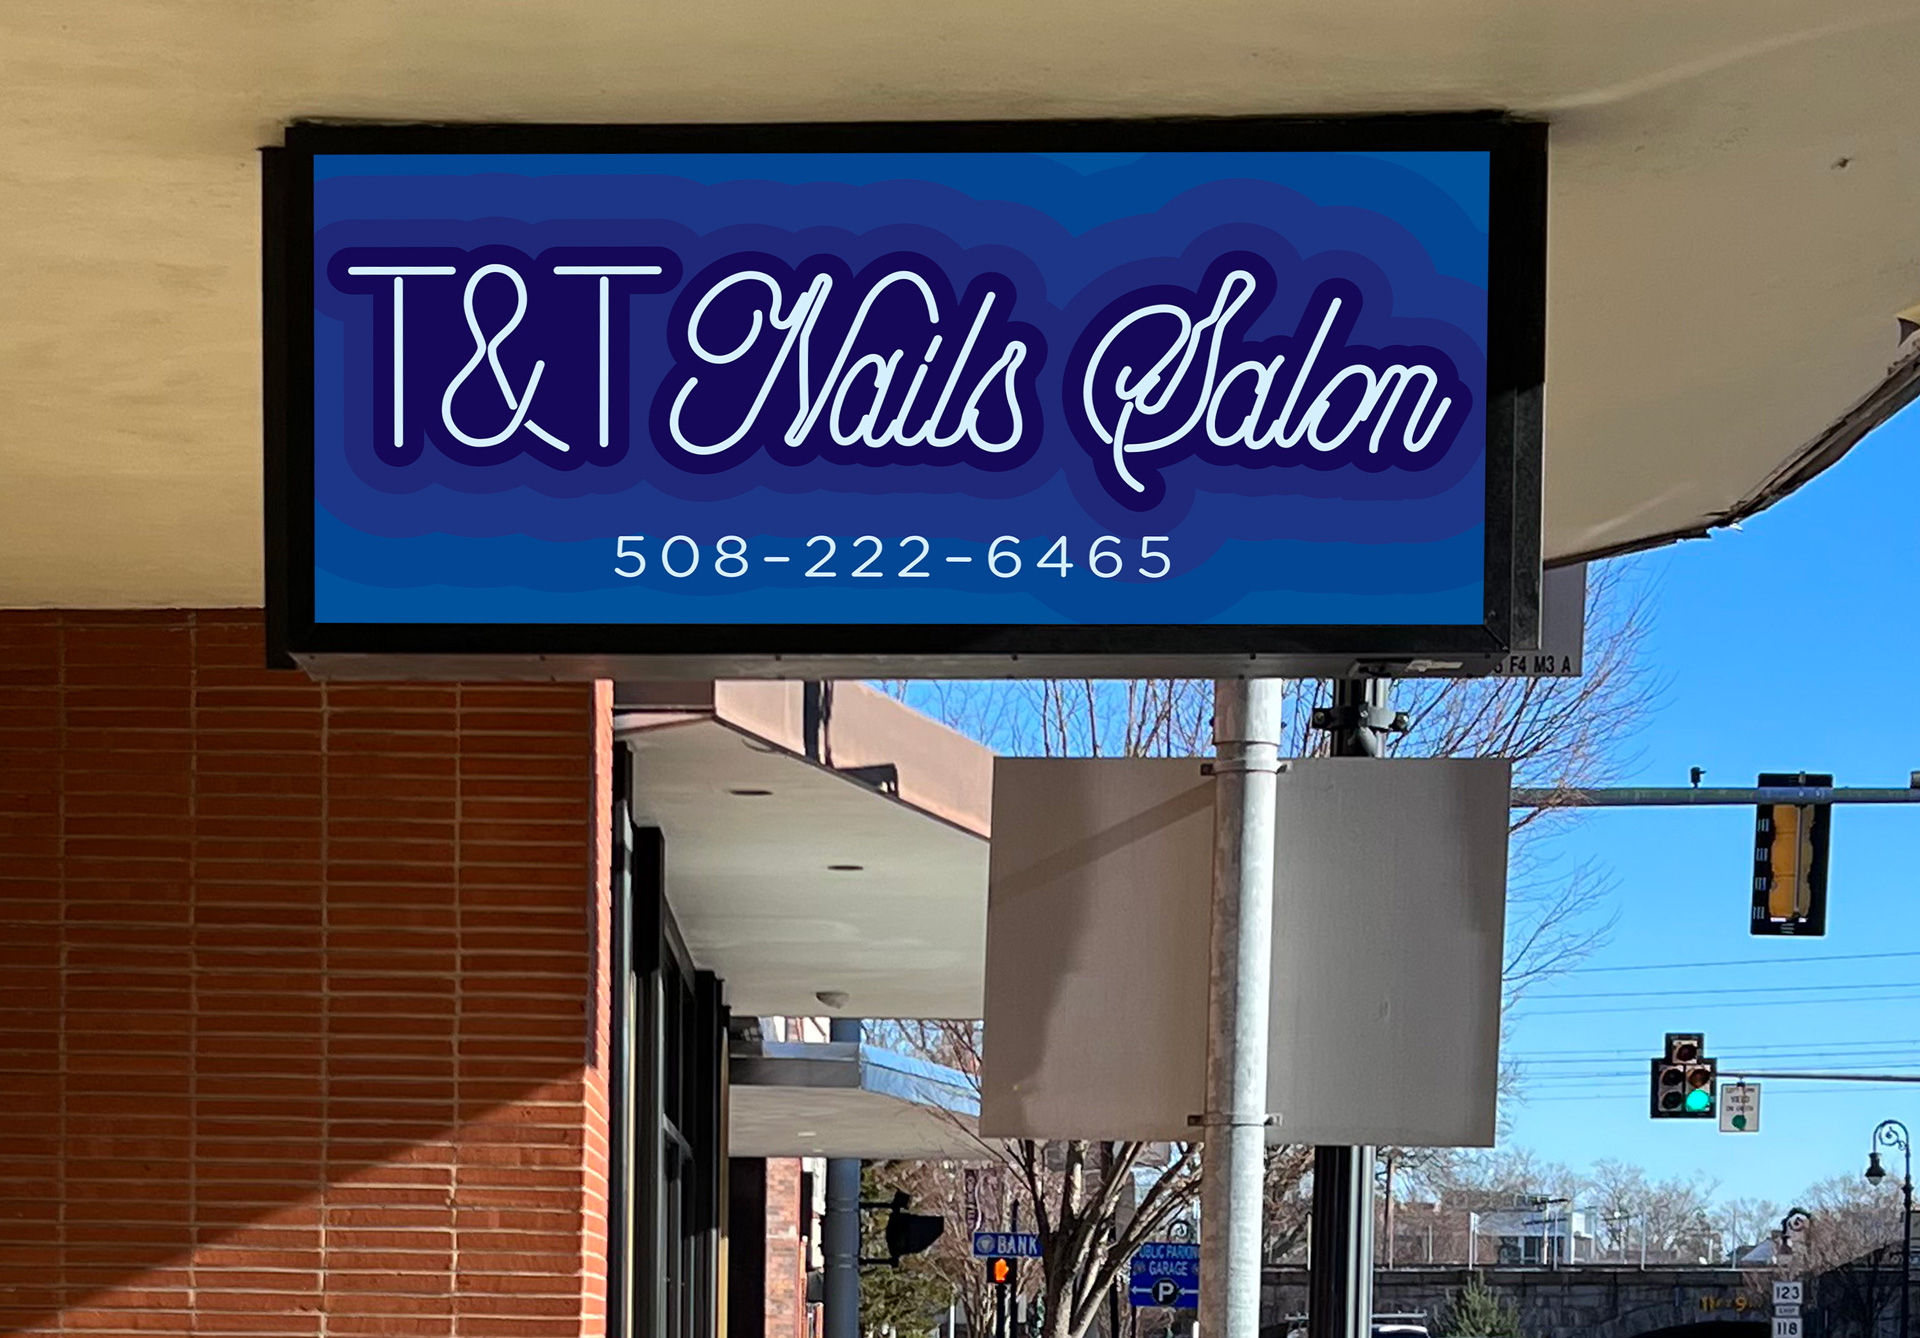 T&T Nails Salon exterior sign